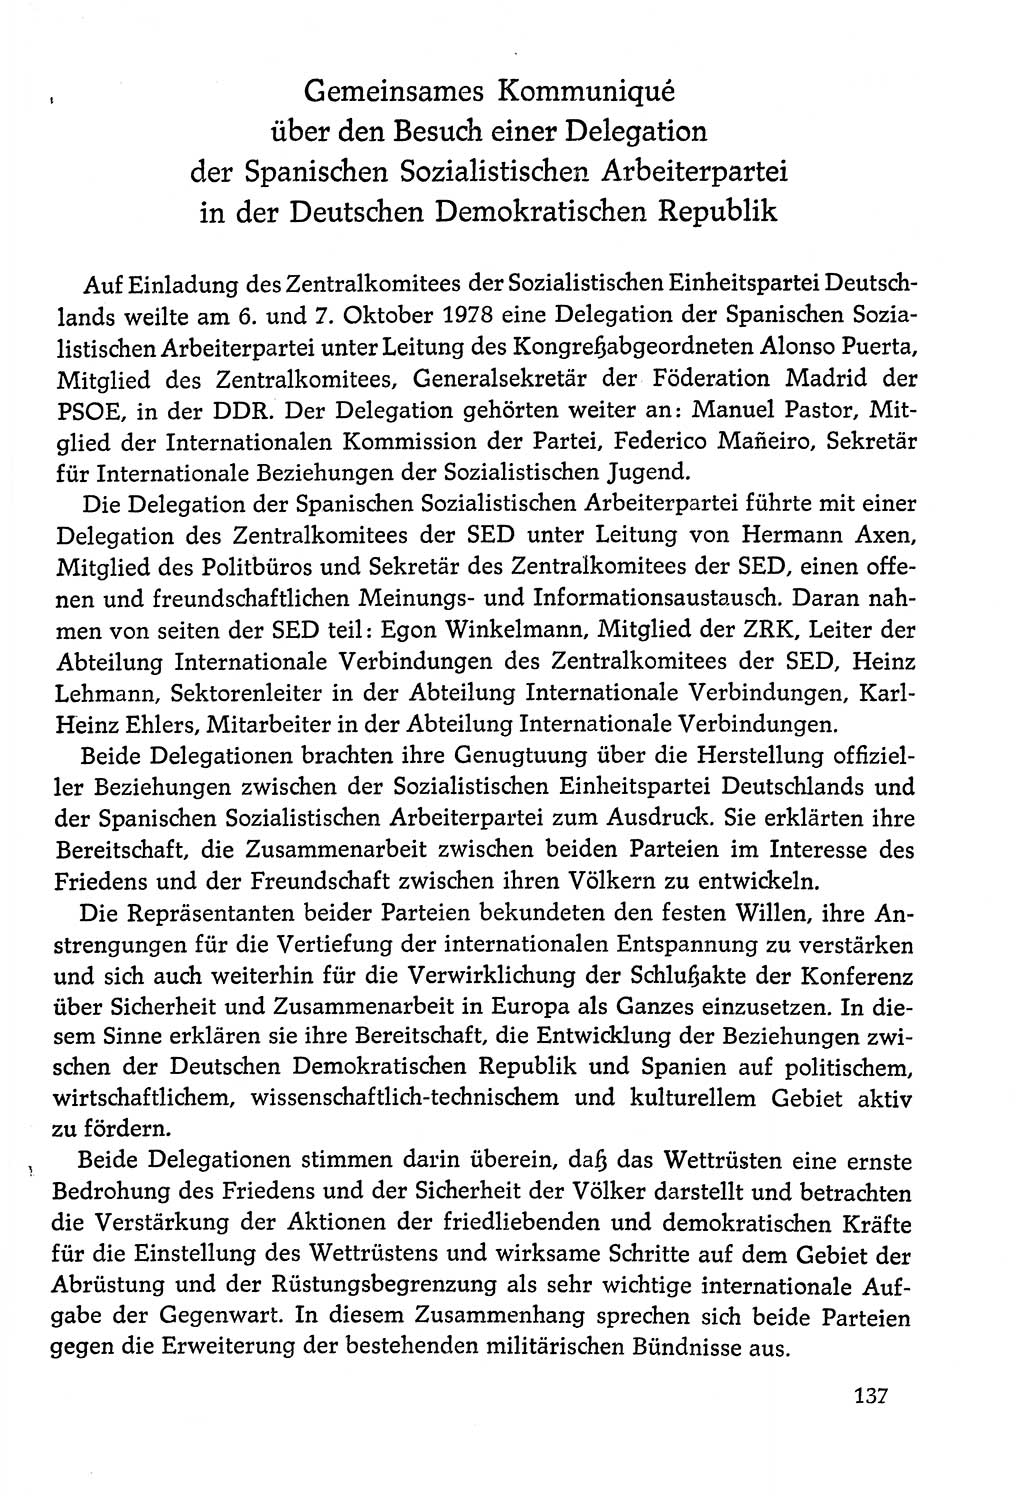 Dokumente der Sozialistischen Einheitspartei Deutschlands (SED) [Deutsche Demokratische Republik (DDR)] 1978-1979, Seite 137 (Dok. SED DDR 1978-1979, S. 137)